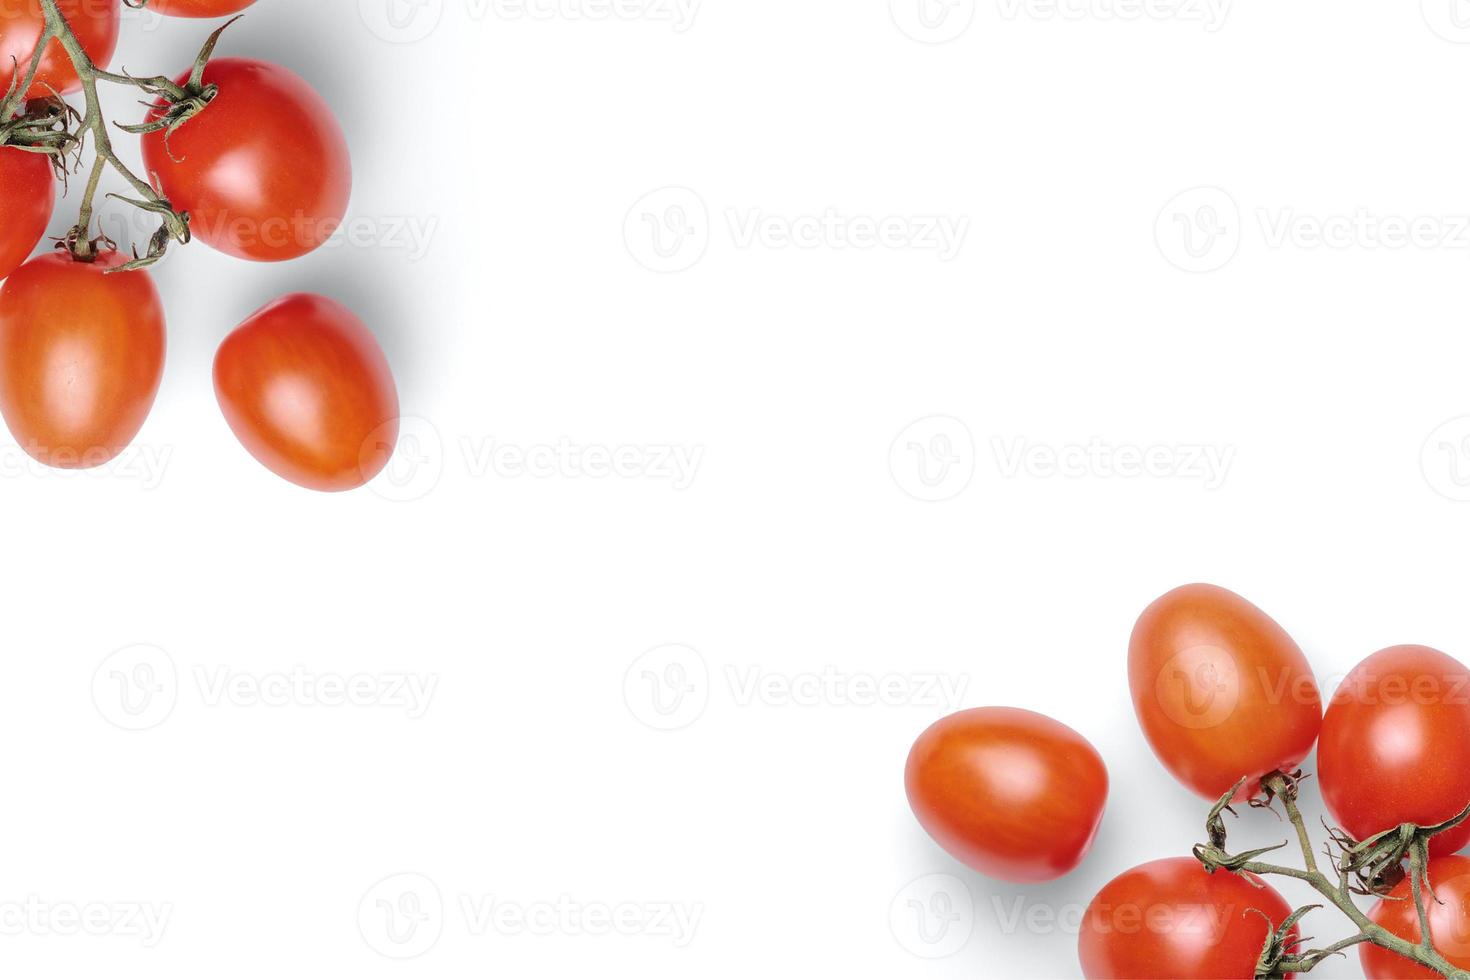 Fondo de tomate, fondo de alimentos, fondo de frutas y verduras con espacio para copiar texto, ingredientes de alimentos frescos para cocinar, vista superior con espacio de copia, banner publicitario de alimentos foto